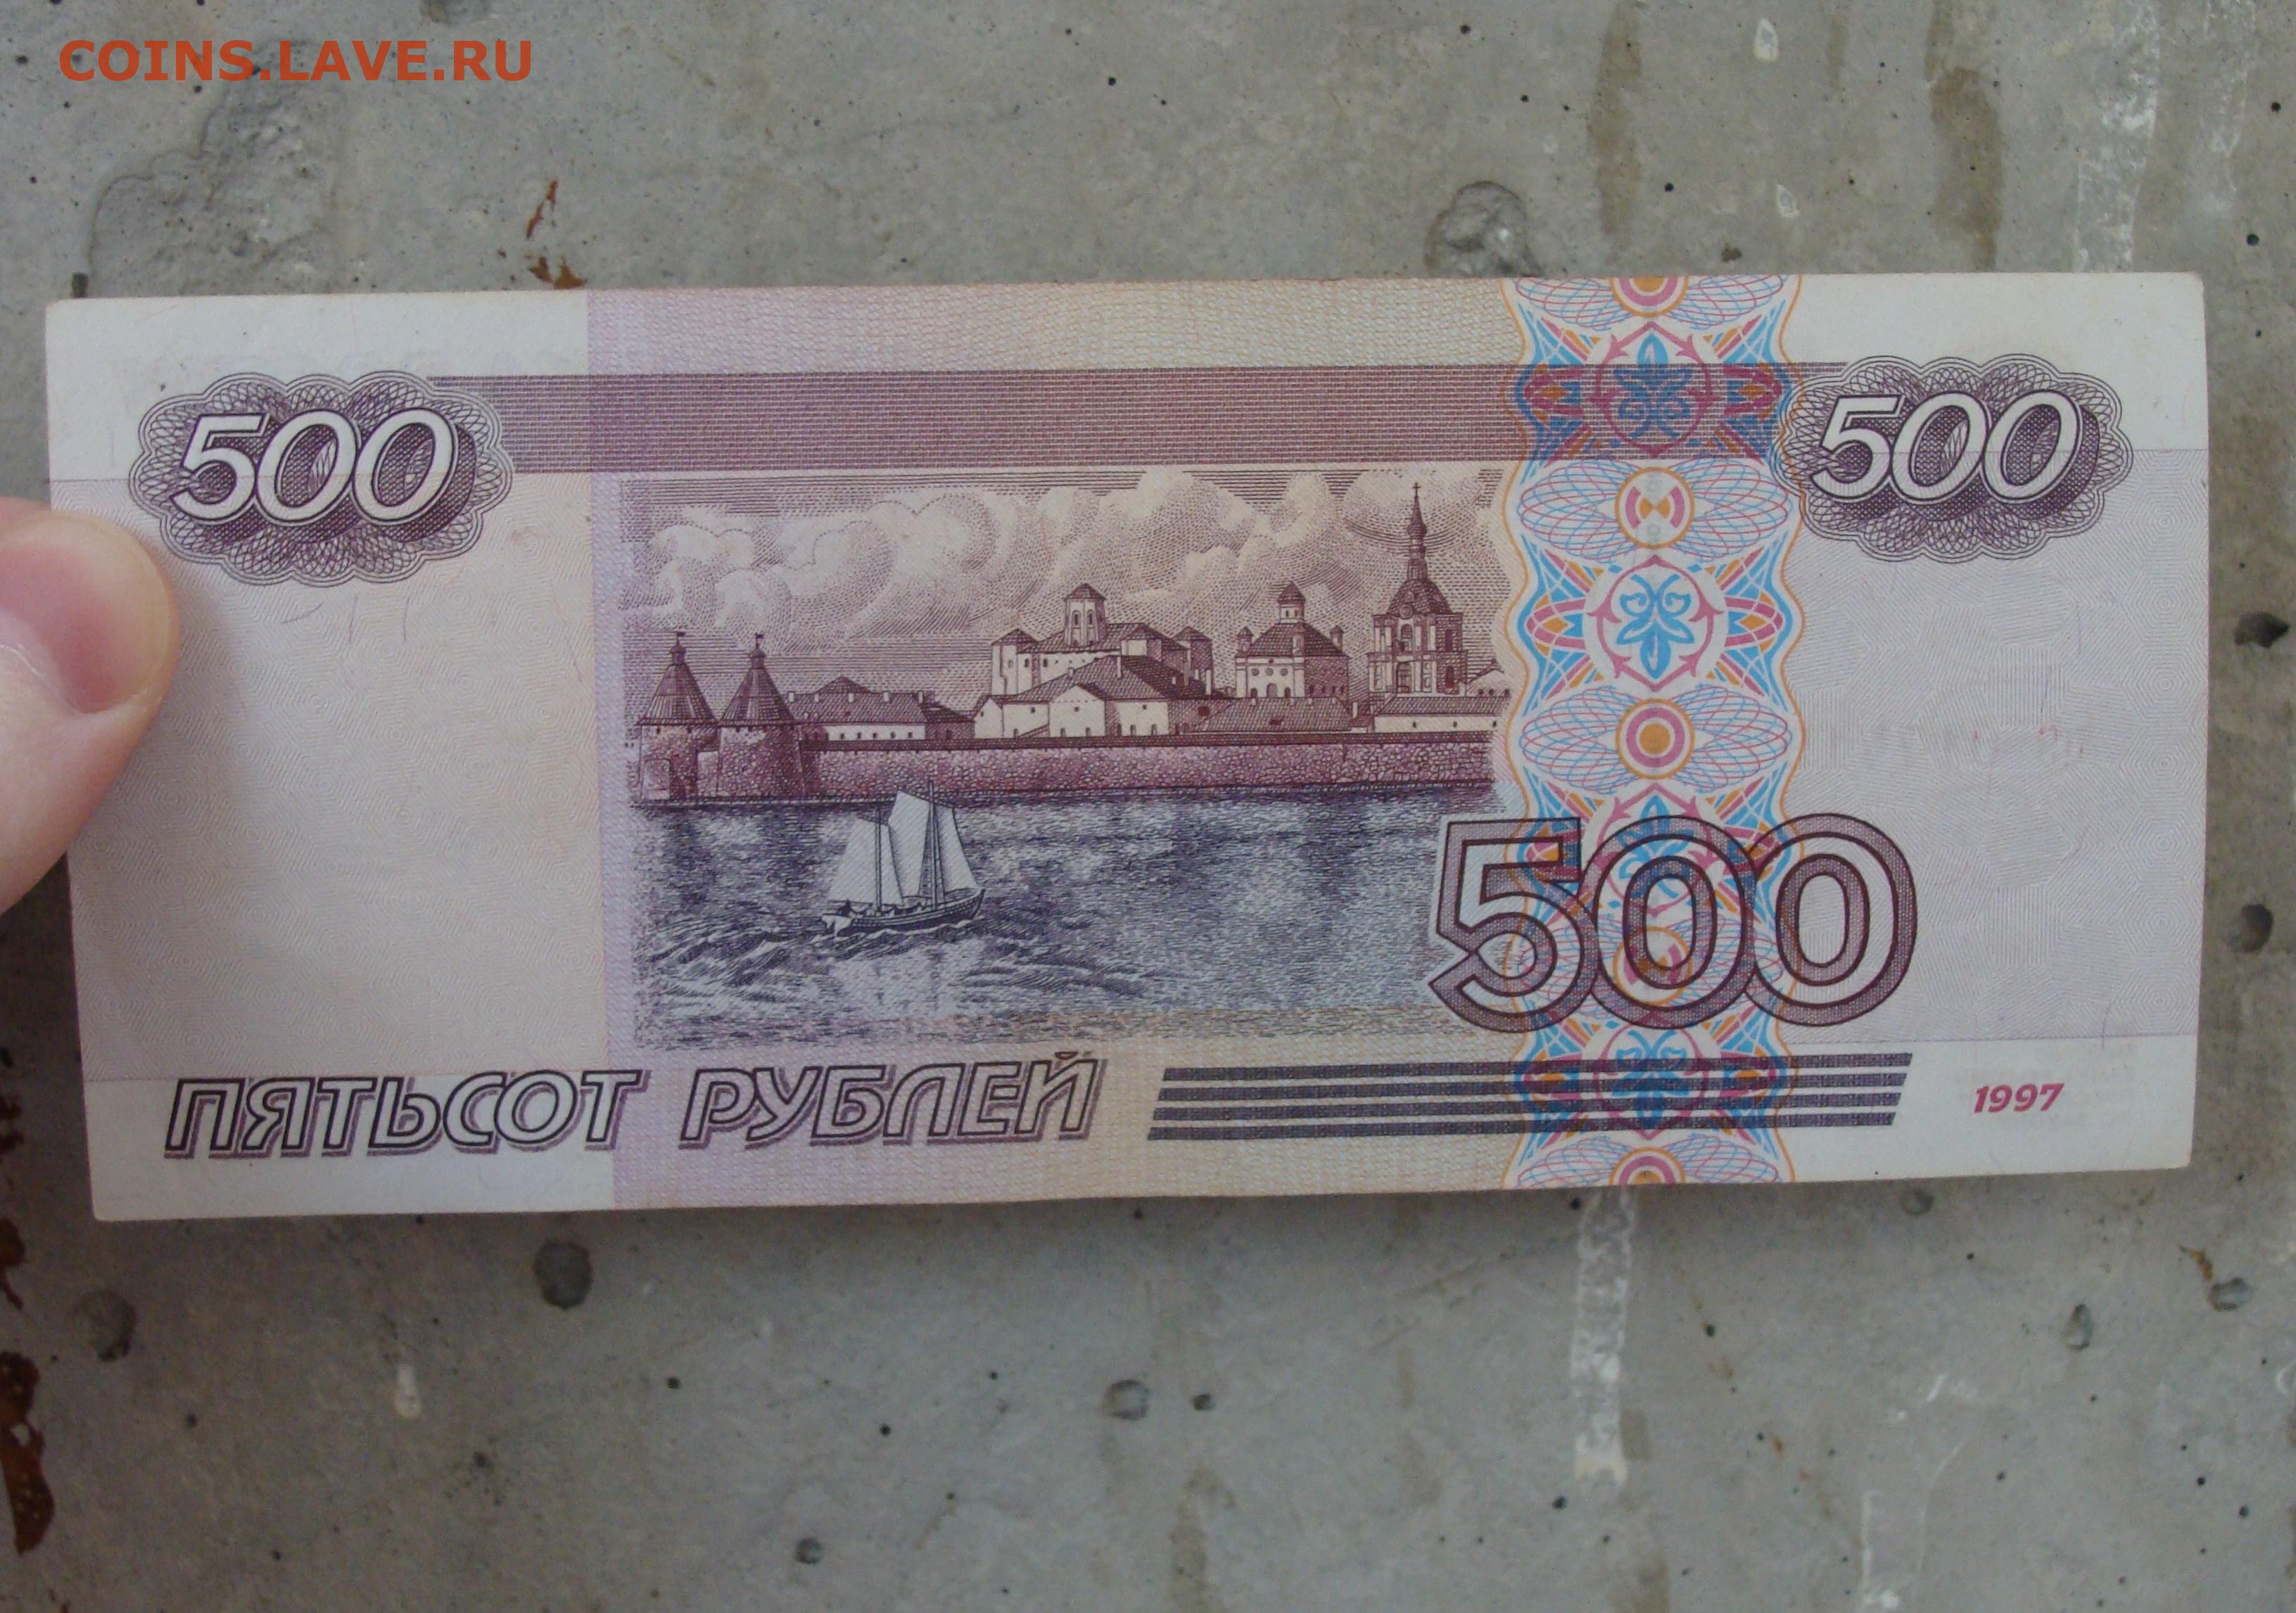 300 российских рублей. 500 Рублей России. 500 Рублей 2001 года модификации. 500 Р модификация 2001. 500 Российских рублей.